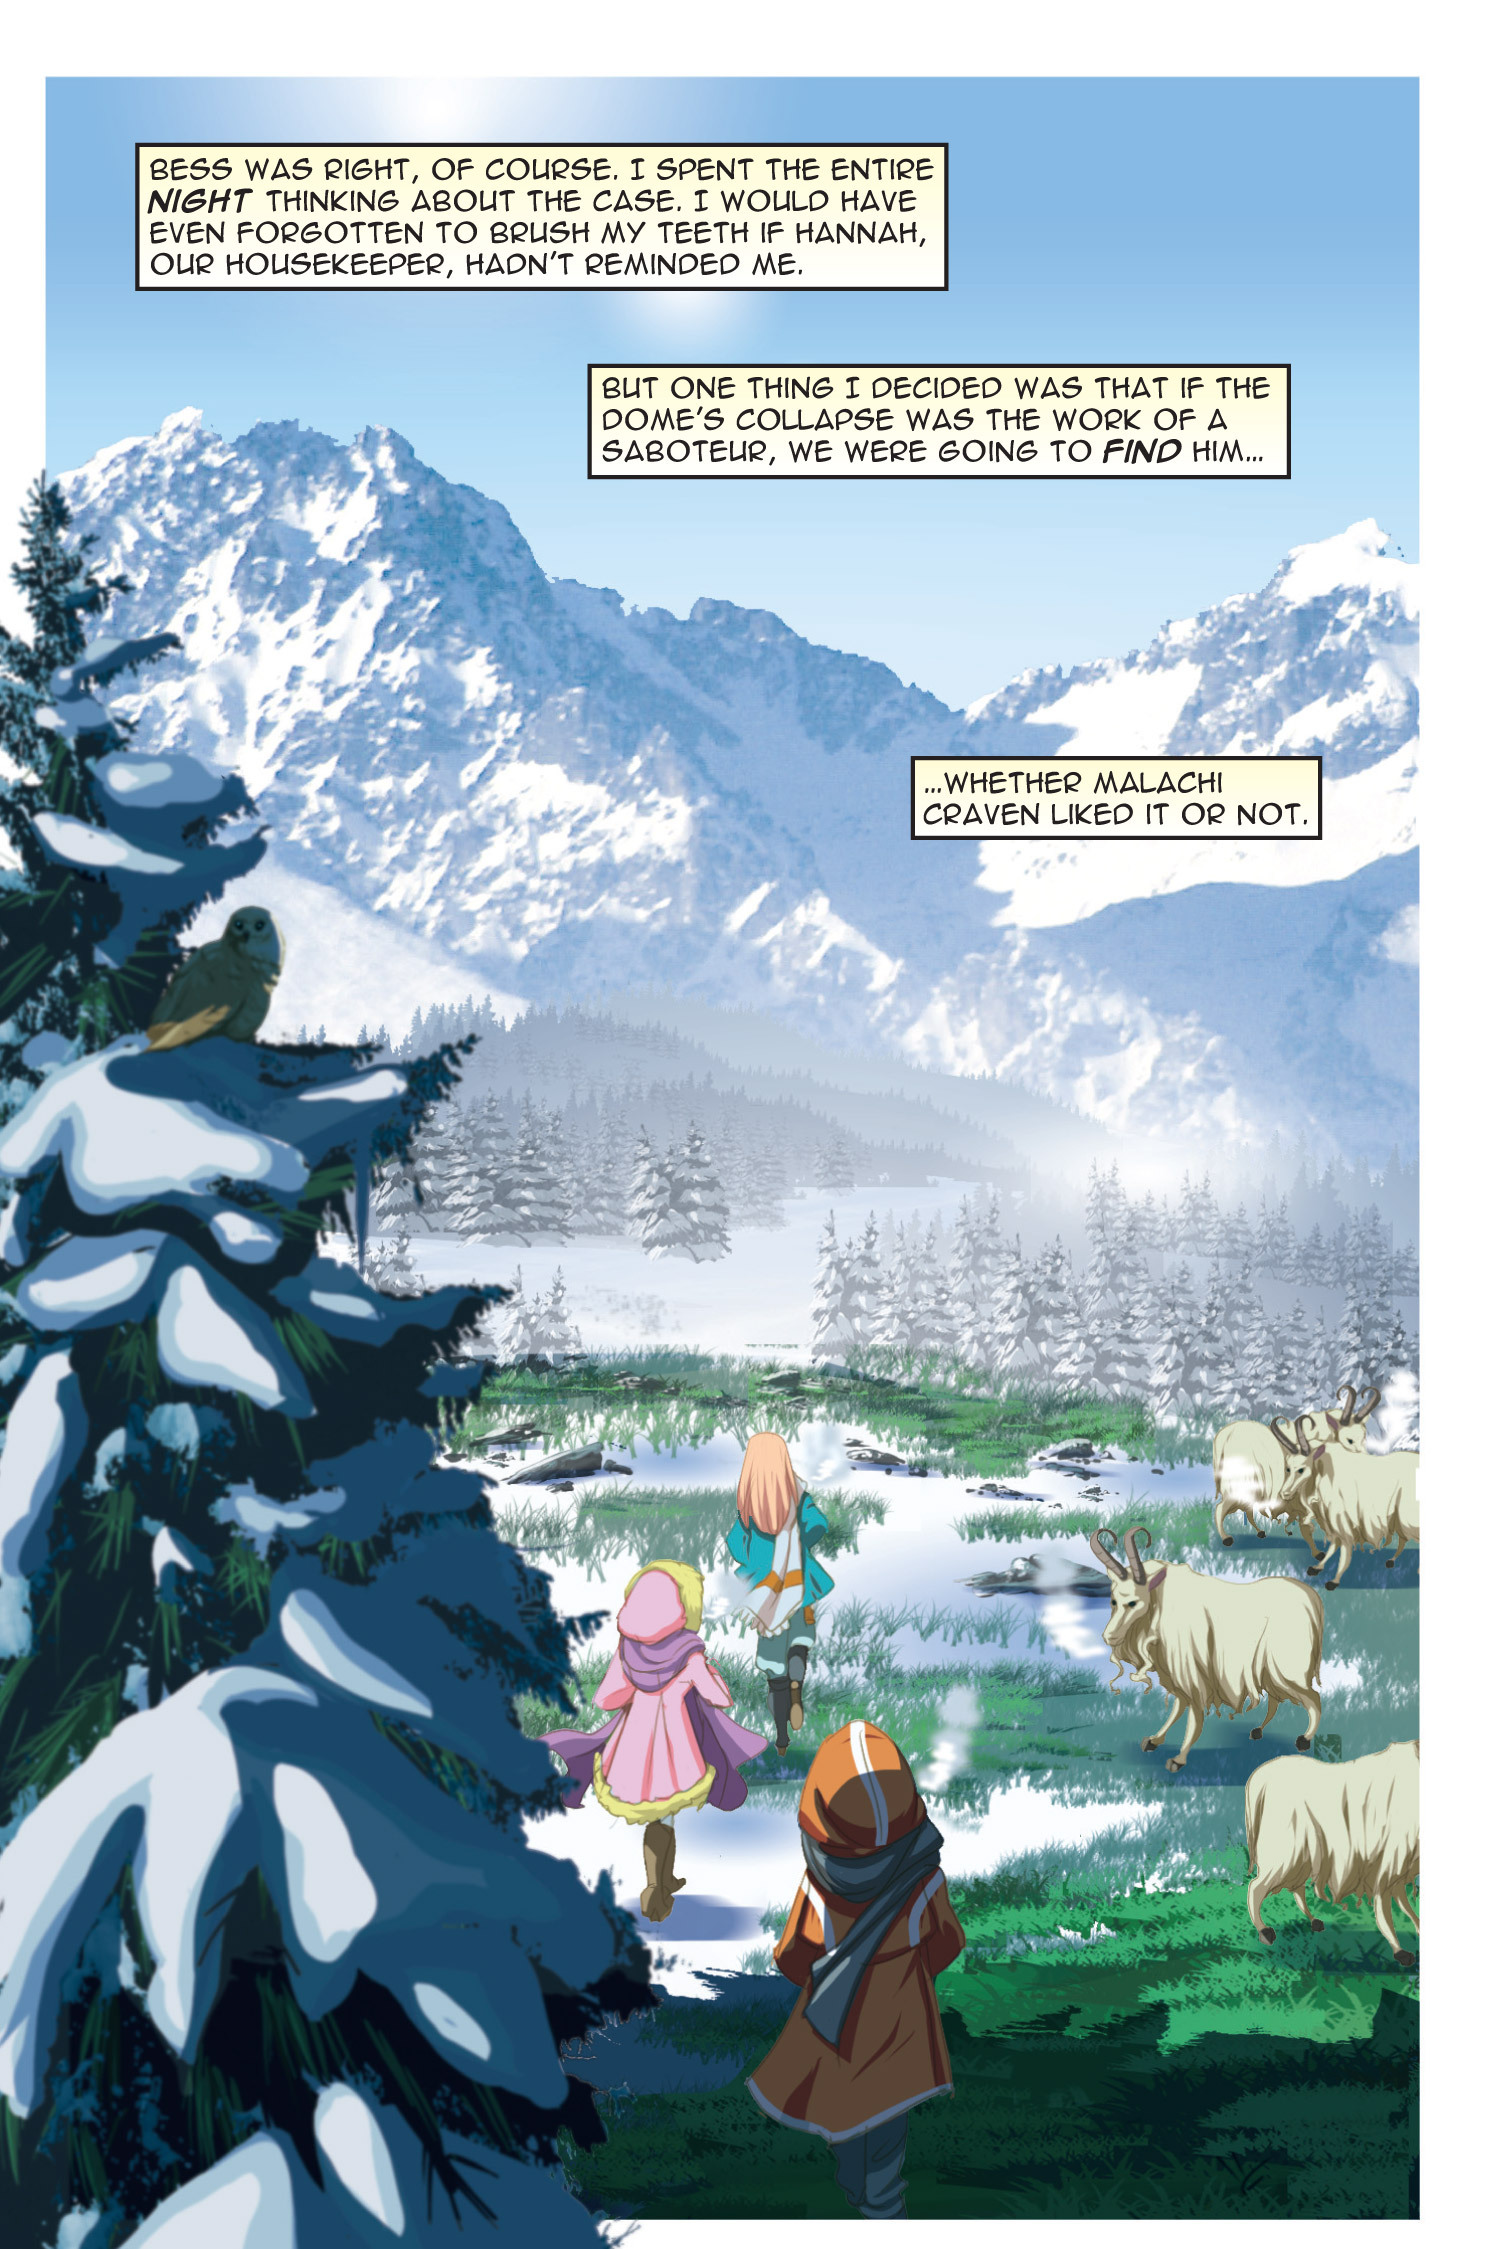 Read online Nancy Drew comic -  Issue #8 - 49